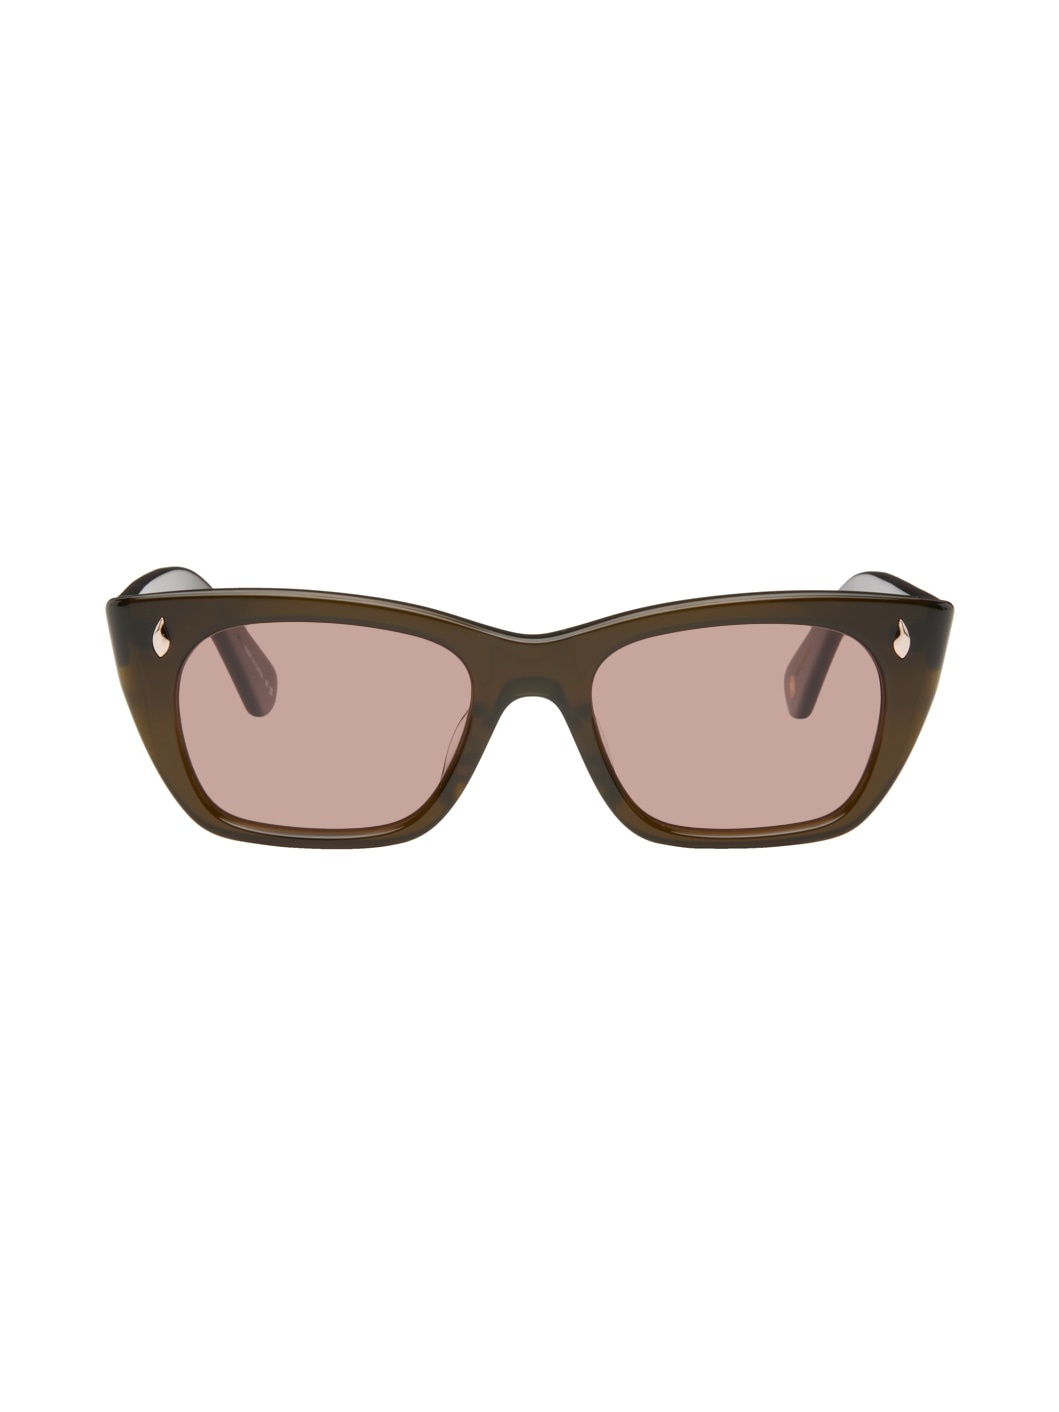 Brown Webster Sunglasses - 1